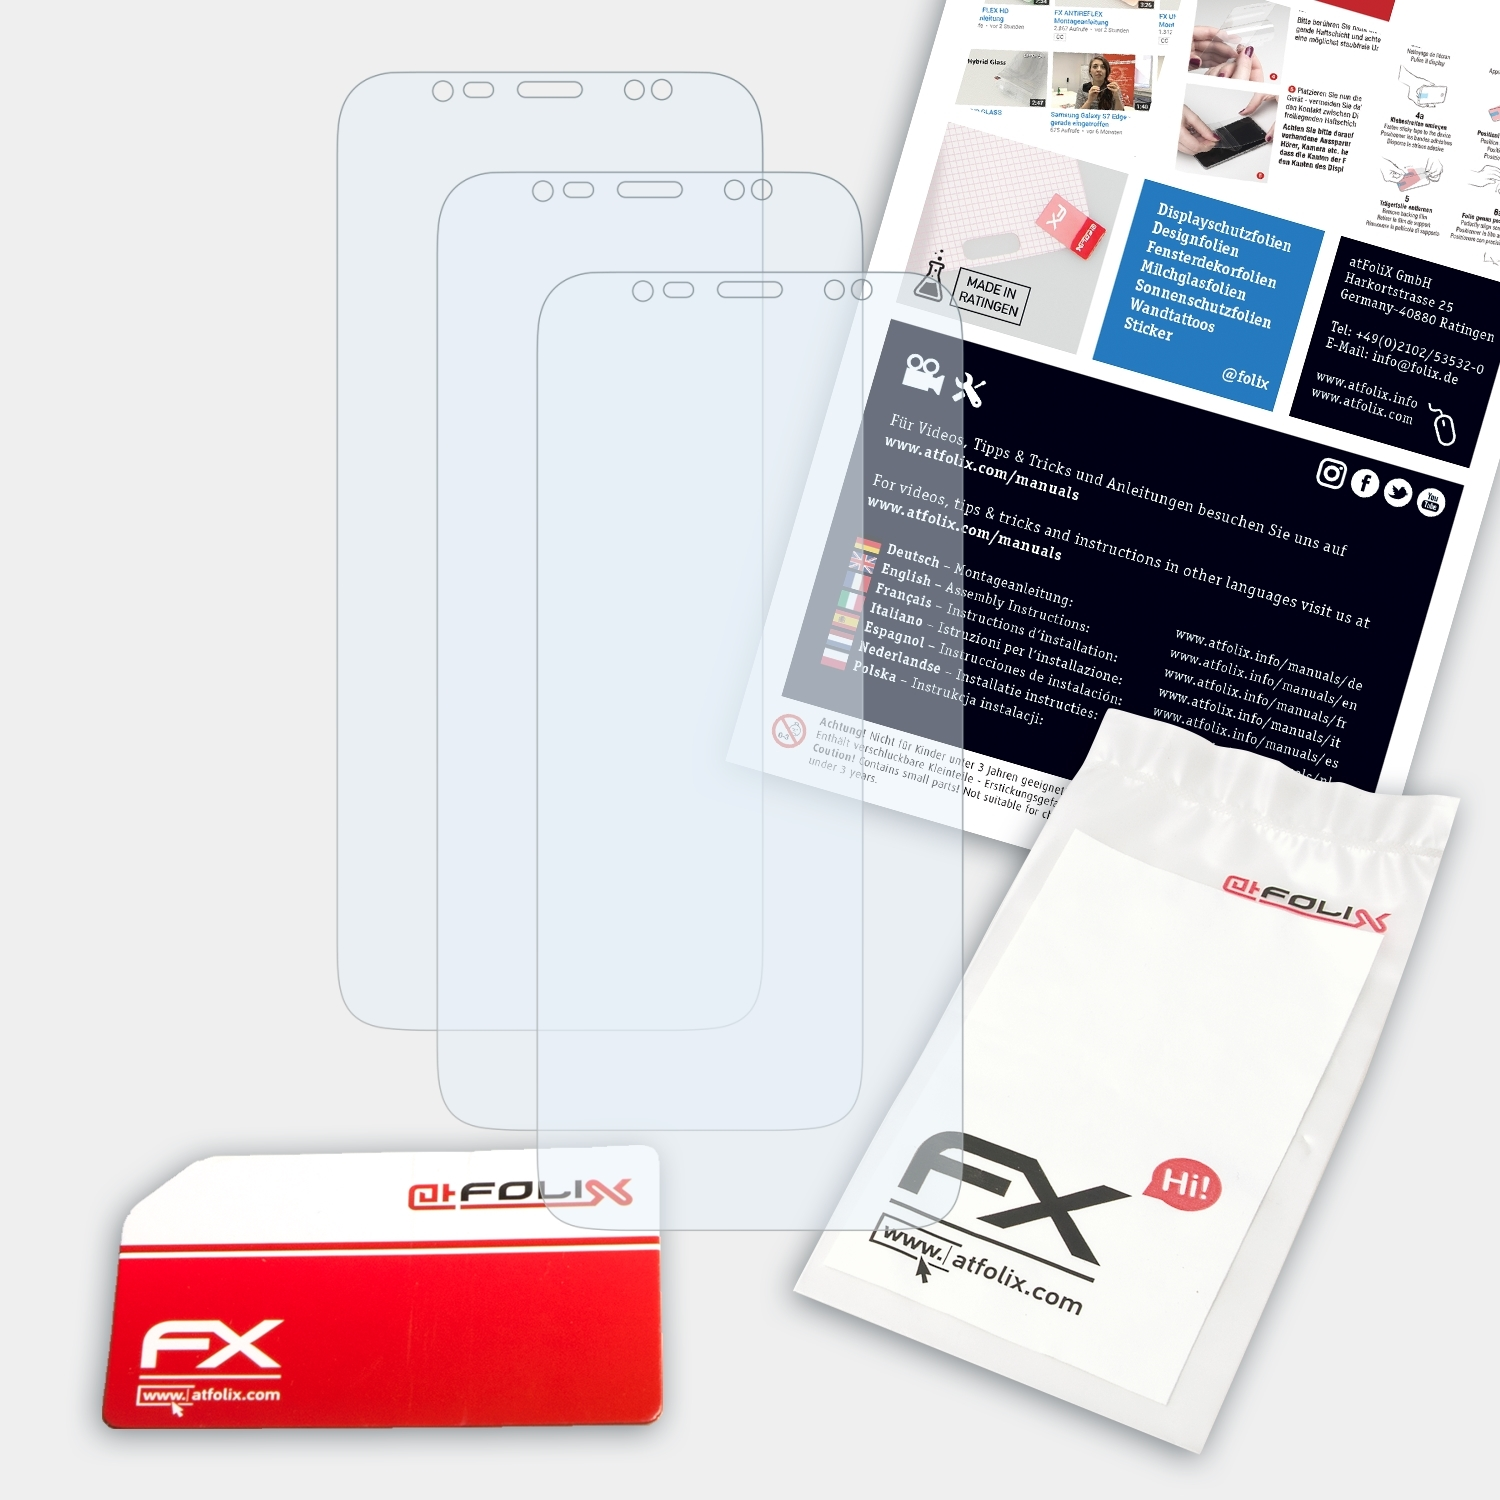 Koolnee ATFOLIX FX-Clear K1) 3x Displayschutz(für